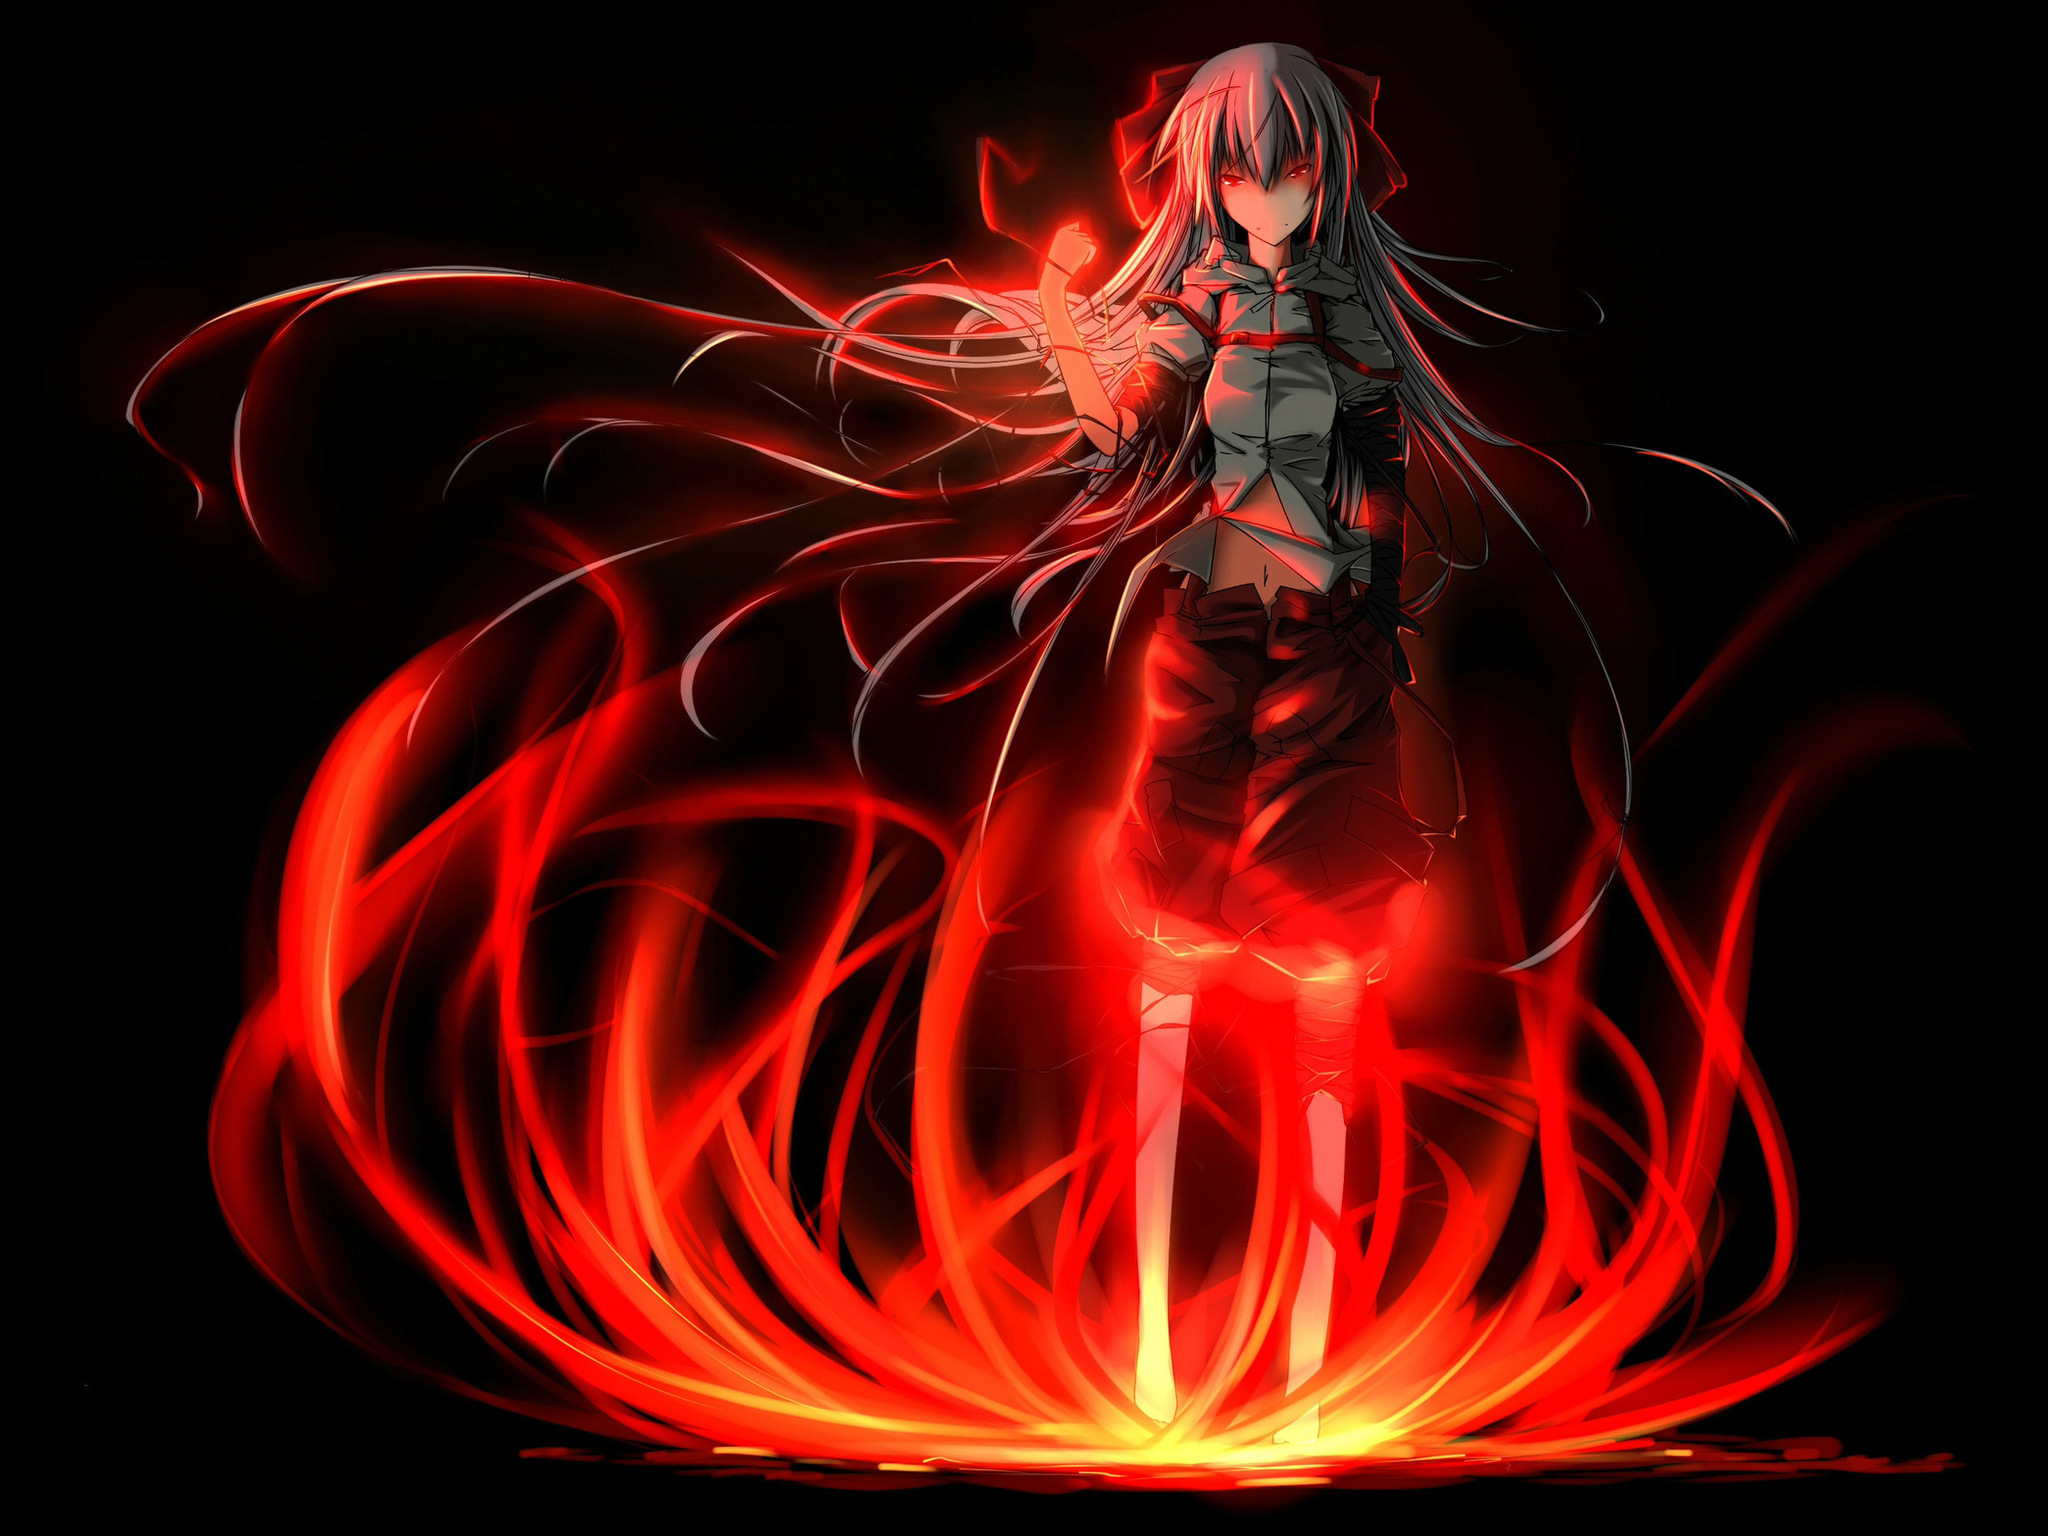 Sad Anime Wallpaper Girl On Fire - Anime Girl Red Aura - 2048x1536 Wallpaper  